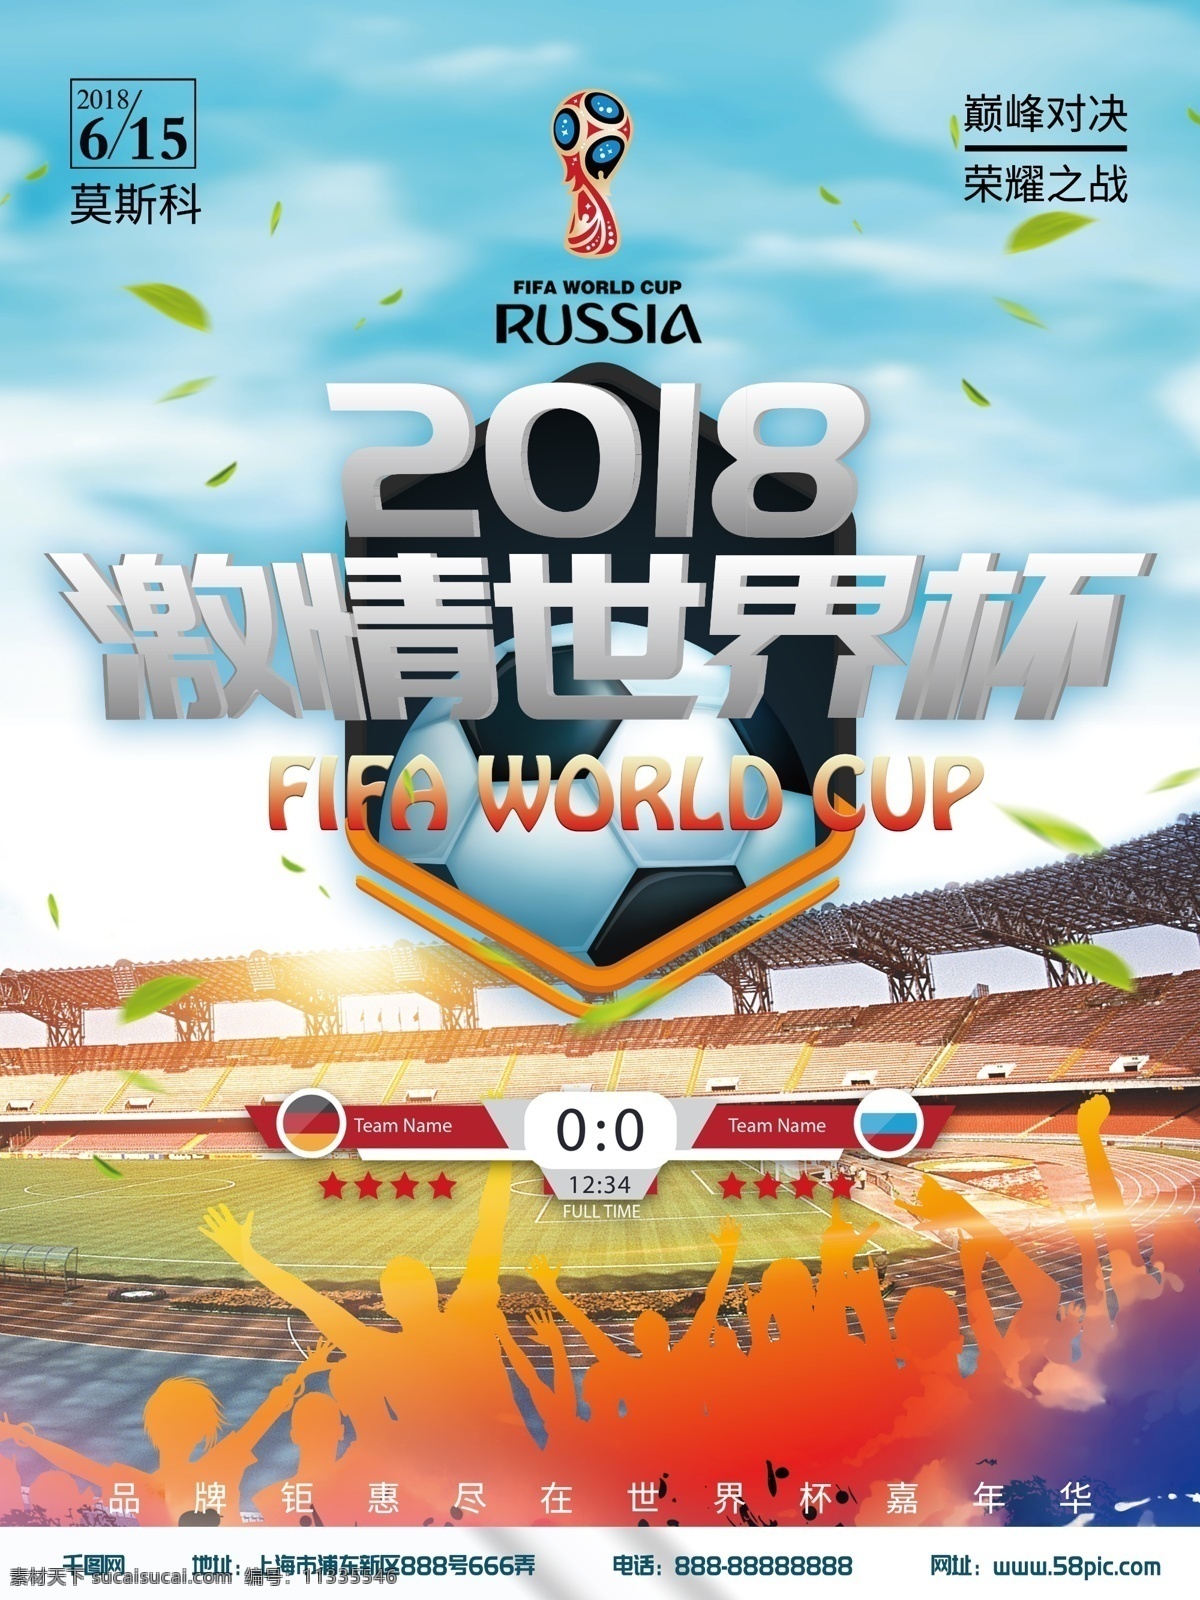 2018 激情 世界杯 体育 海报 激情世界杯 足球 赛场 世界杯赛程 俄国世界杯 相约世界杯